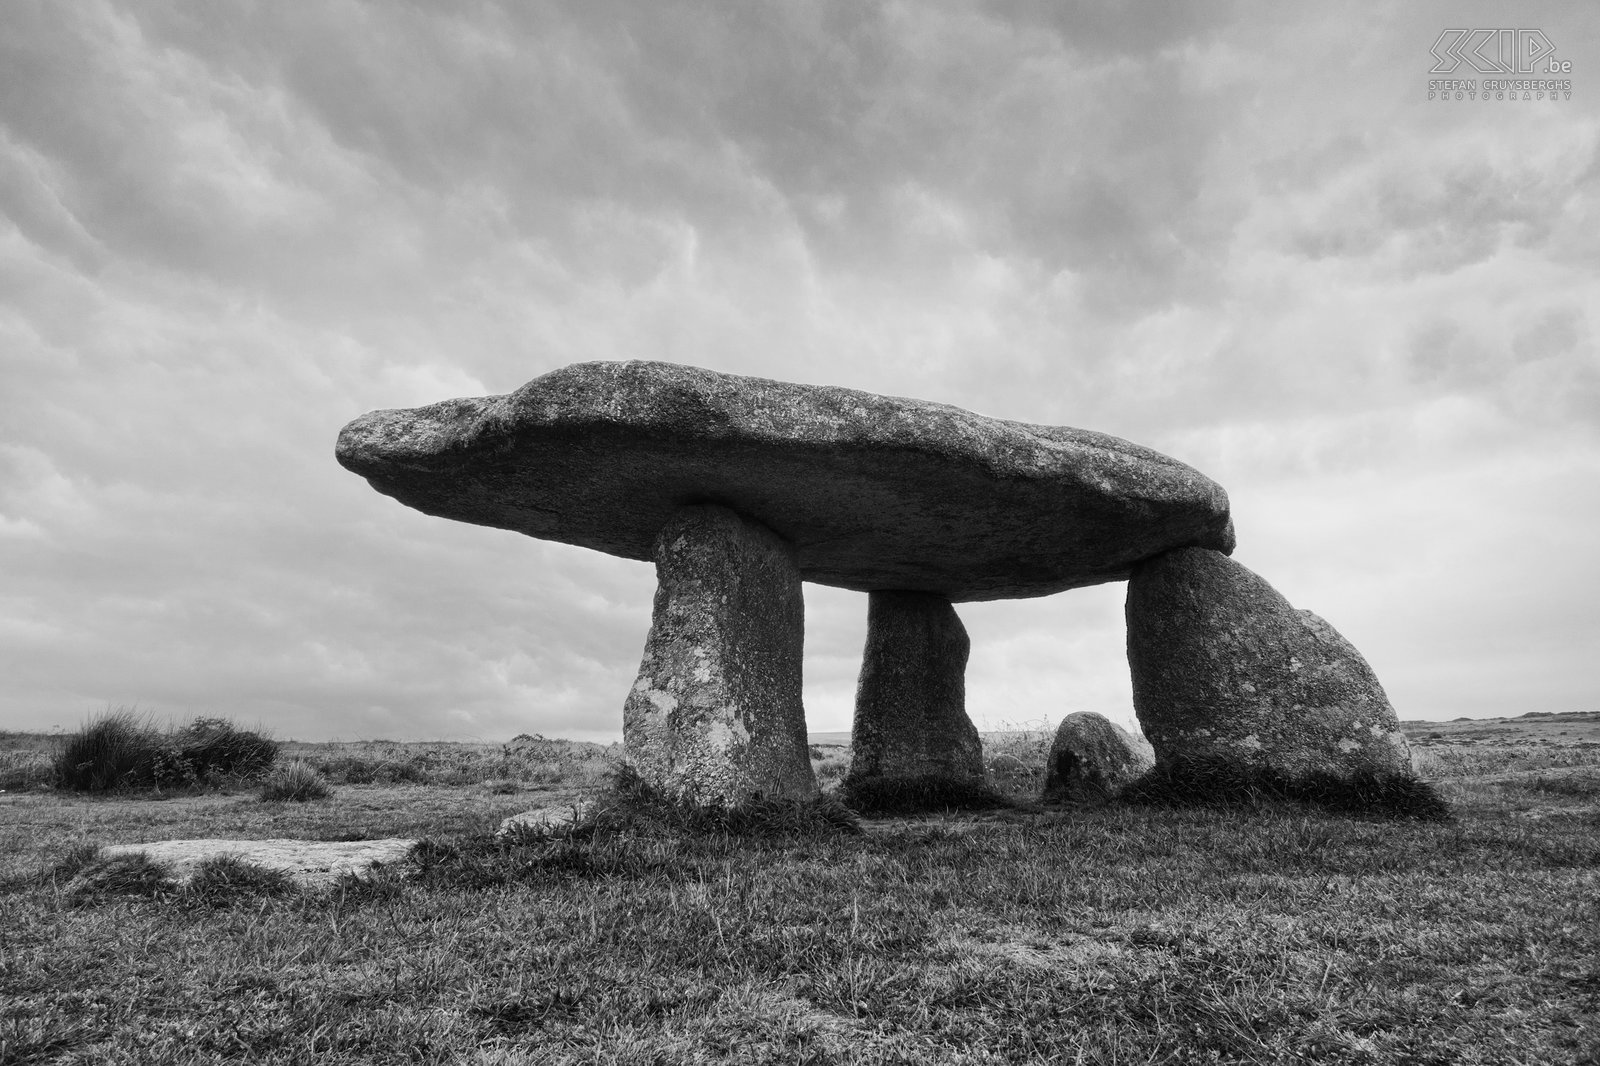 Lanyon Quoit Op het Penwith schiereiland in Cornwall kan je nog verschillende prehistorische overblijfselen terugvinden. Het meest bekende hunebed/dolmen is Lanyon Quoit. Deze megaliet was waarschijnlijk een grafkamer en het weegt ongeveer 13 ton. Stefan Cruysberghs